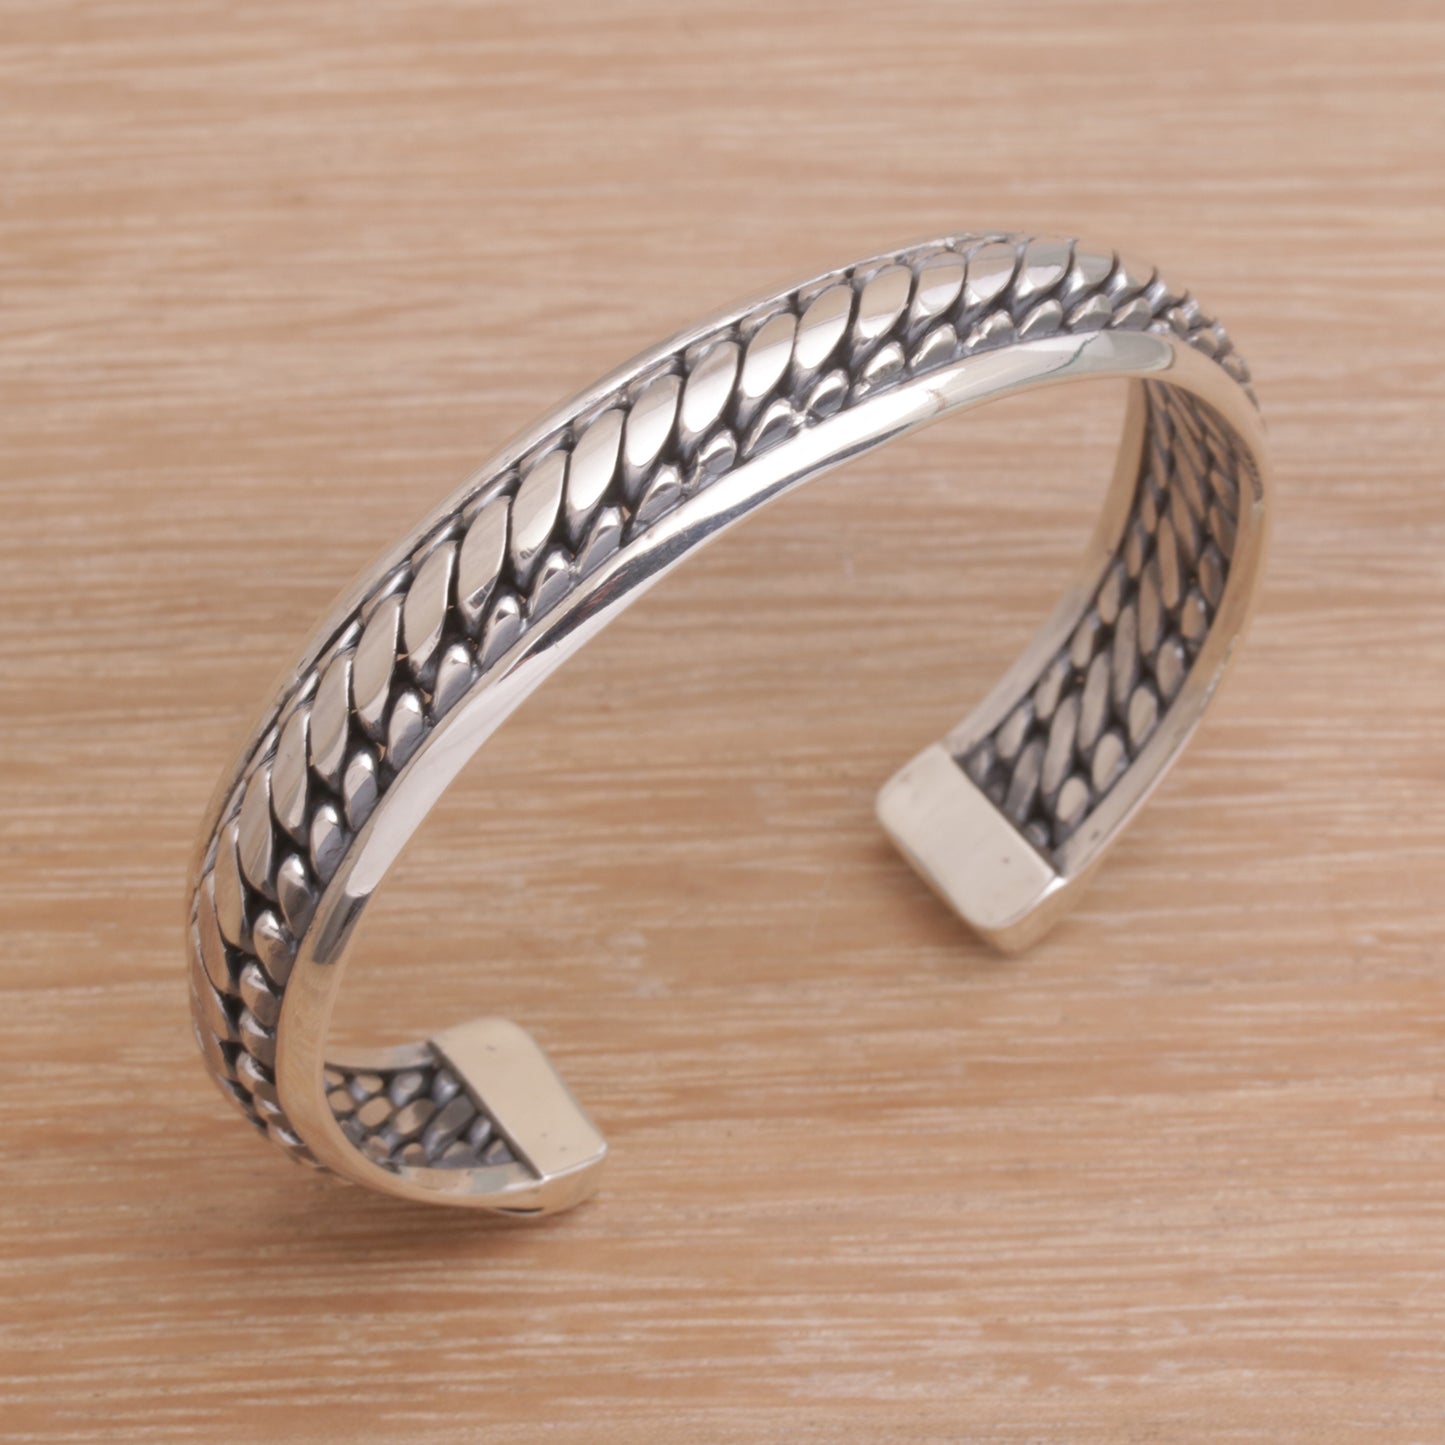 Eternity Bond Sterling Silver Cuff Bracelet Handcrafted in Bali